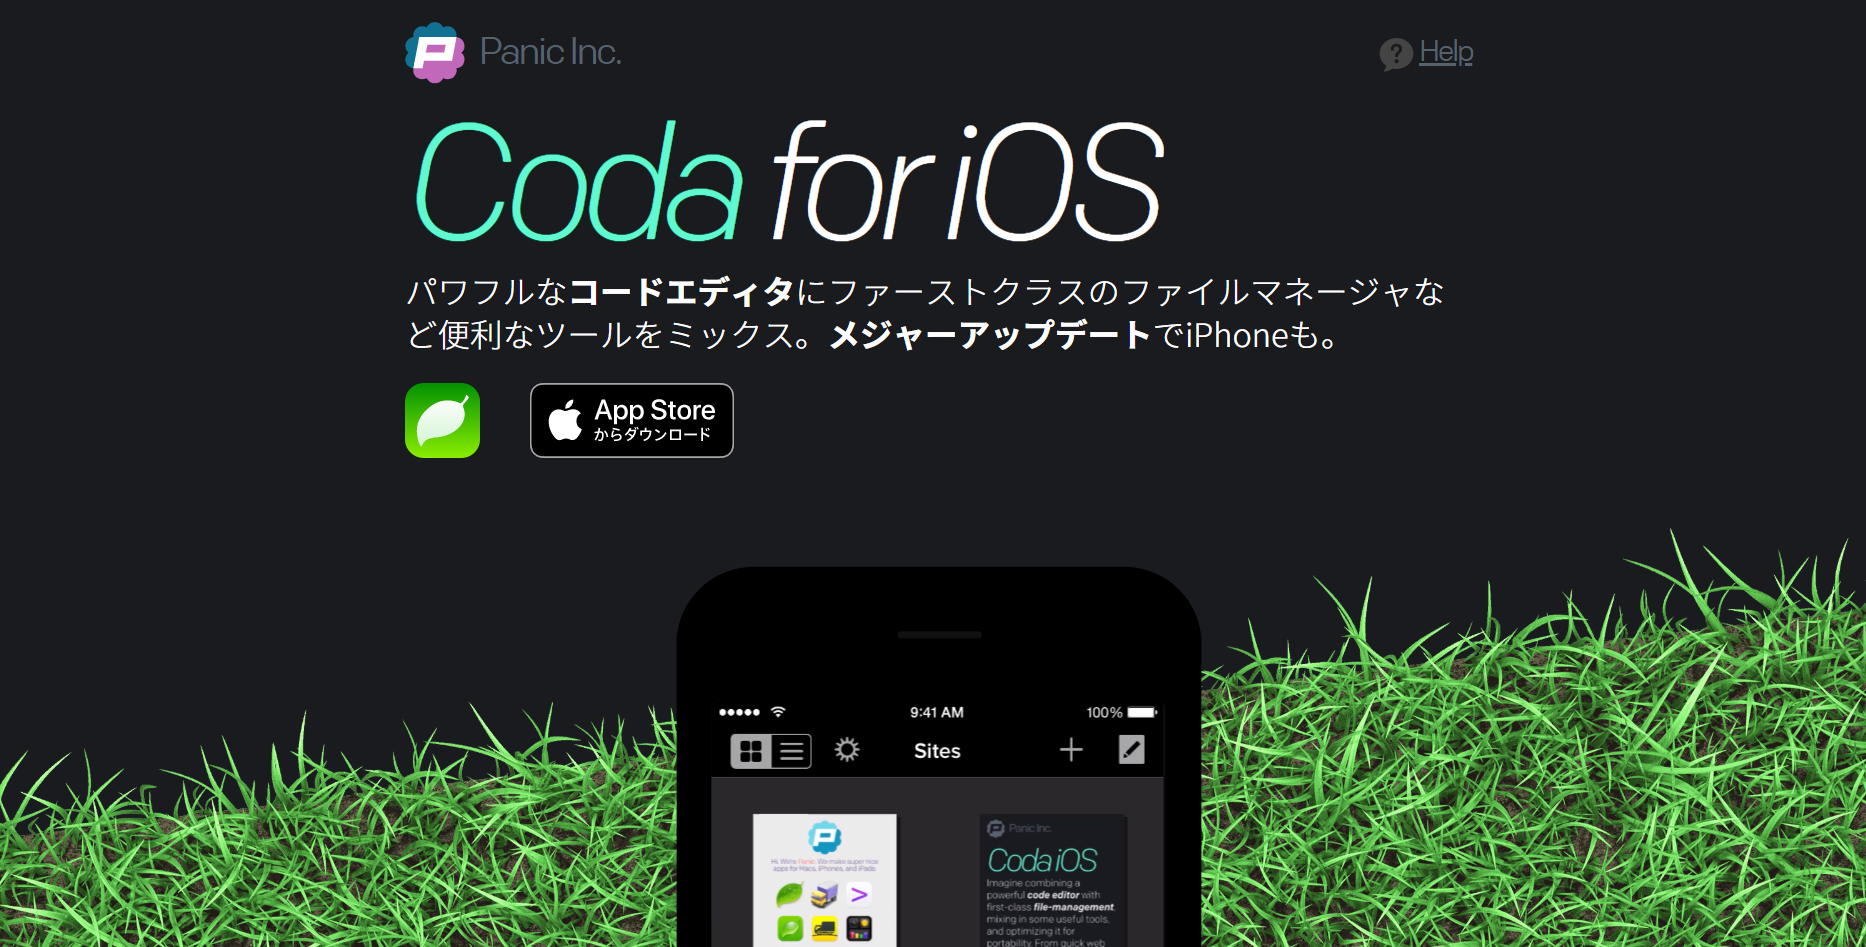 Coda for iOS